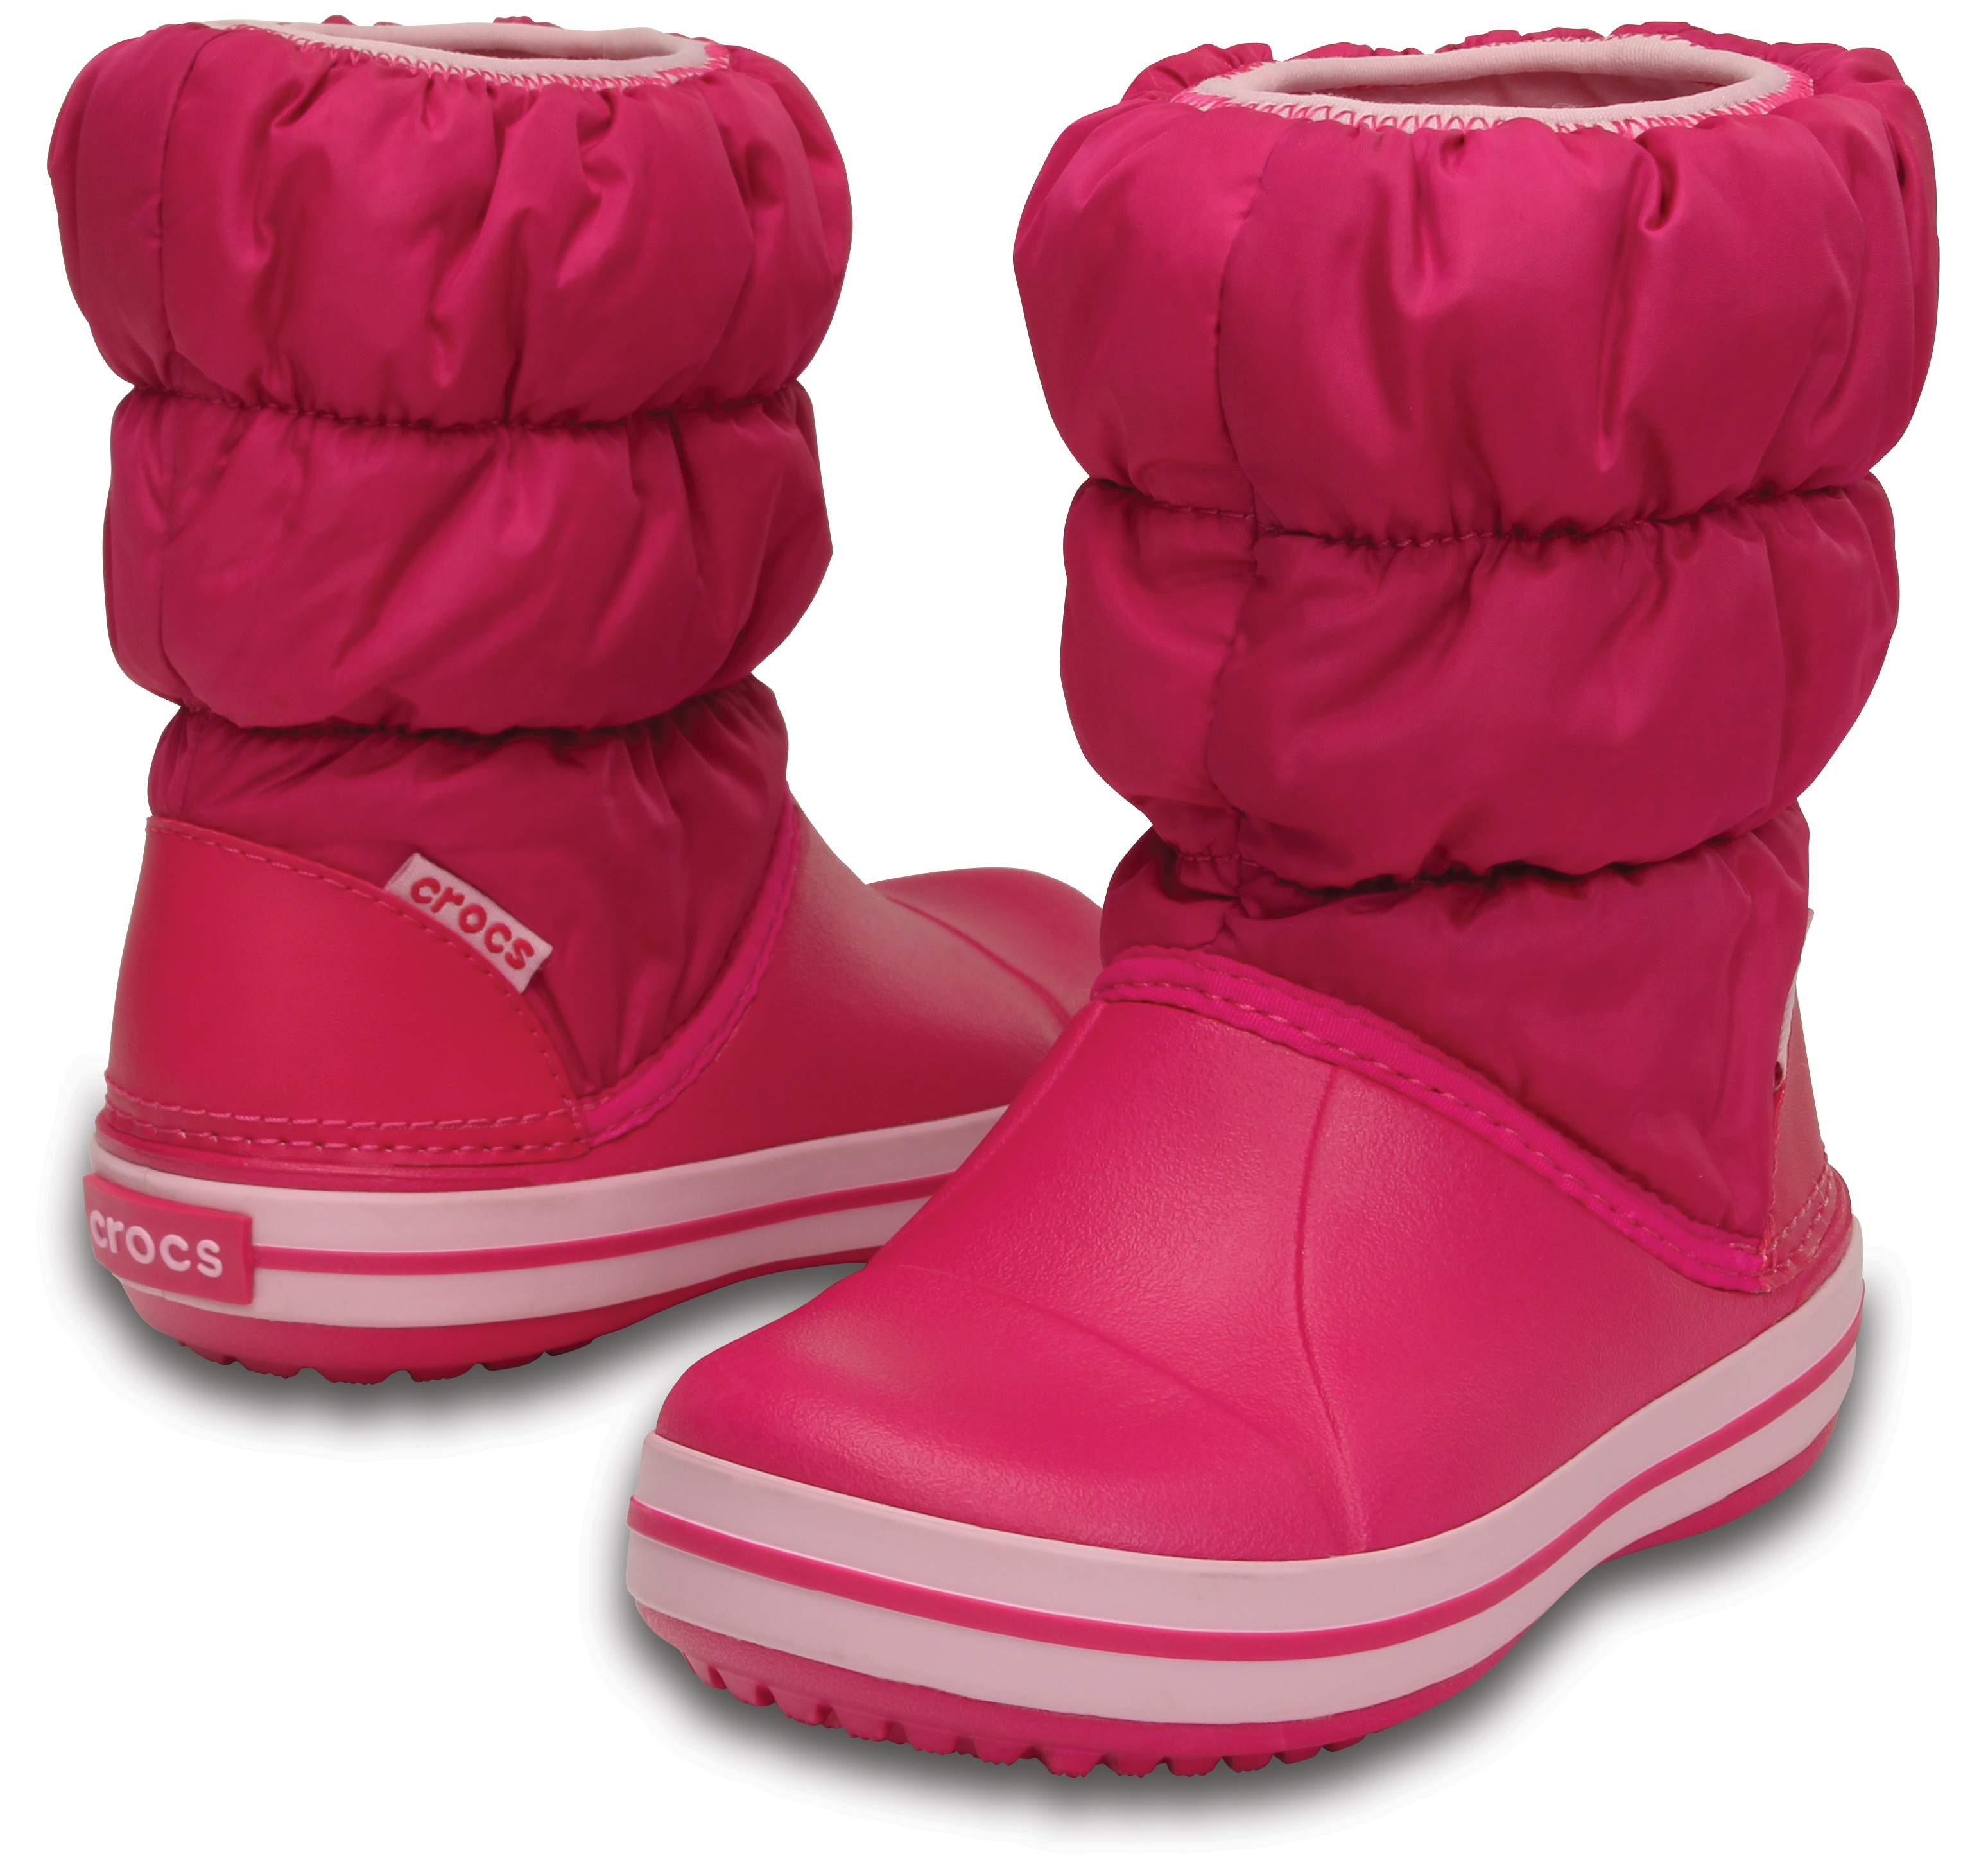 crocs snow boots toddler